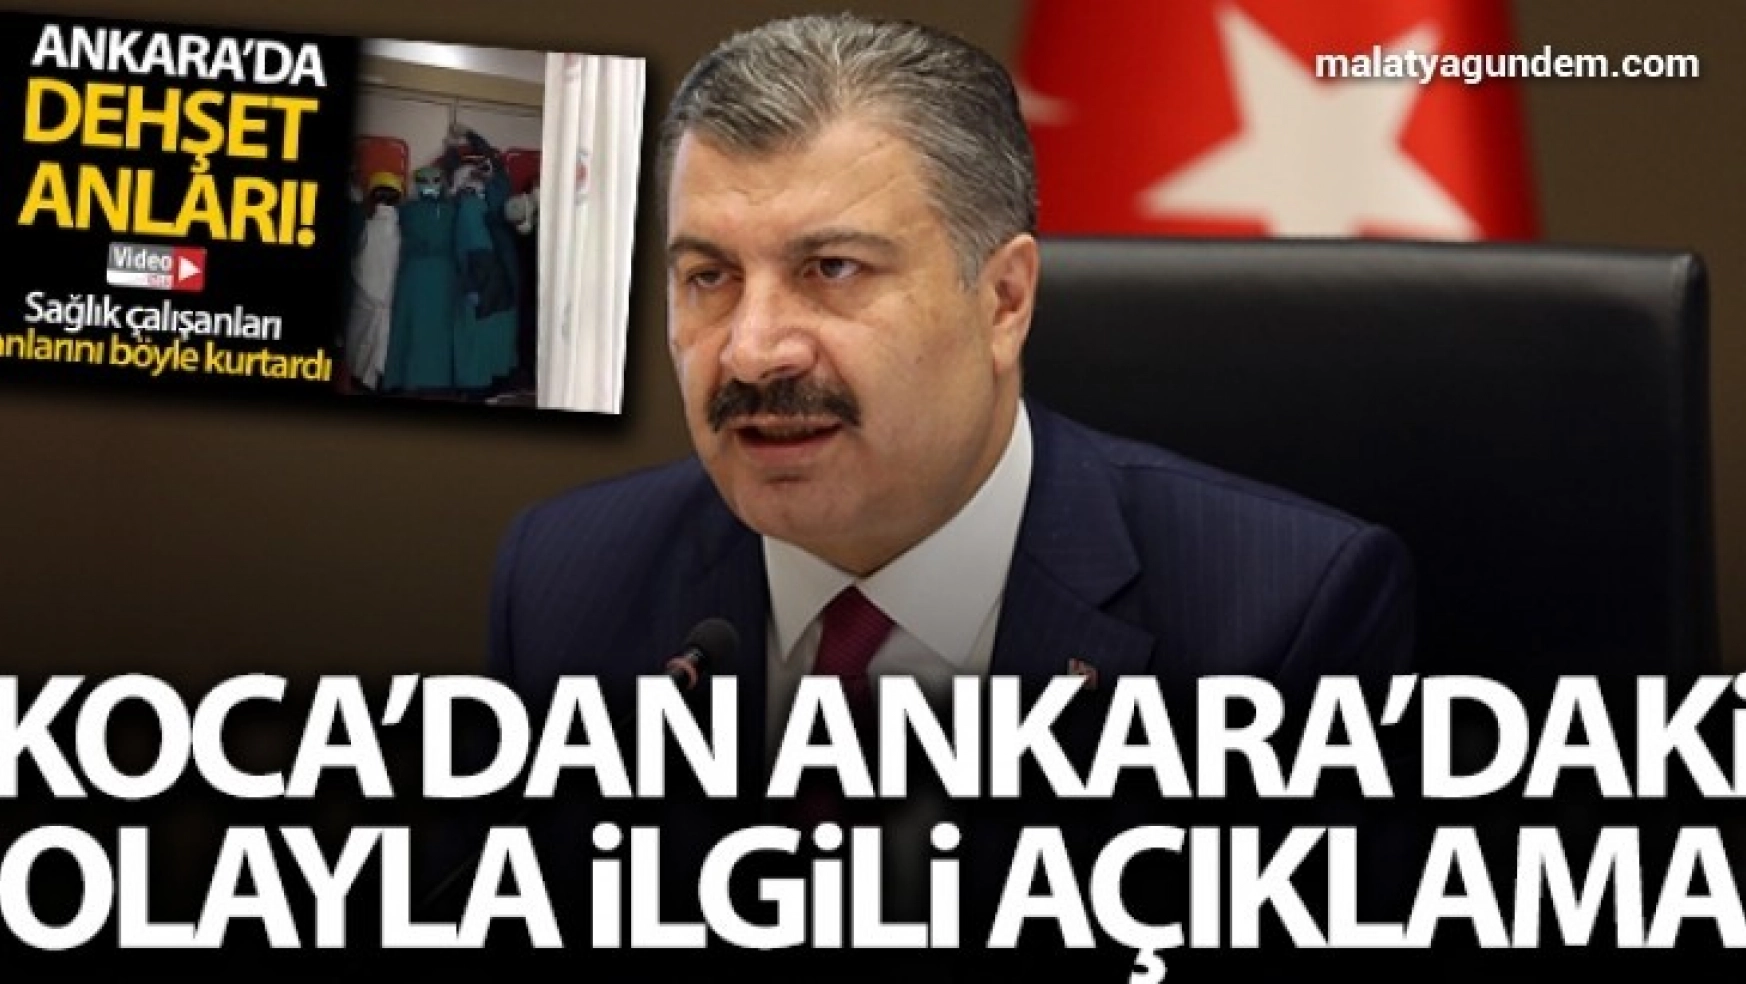 Bakan Koca'dan Ankara'daki olayla ilgili açıklama